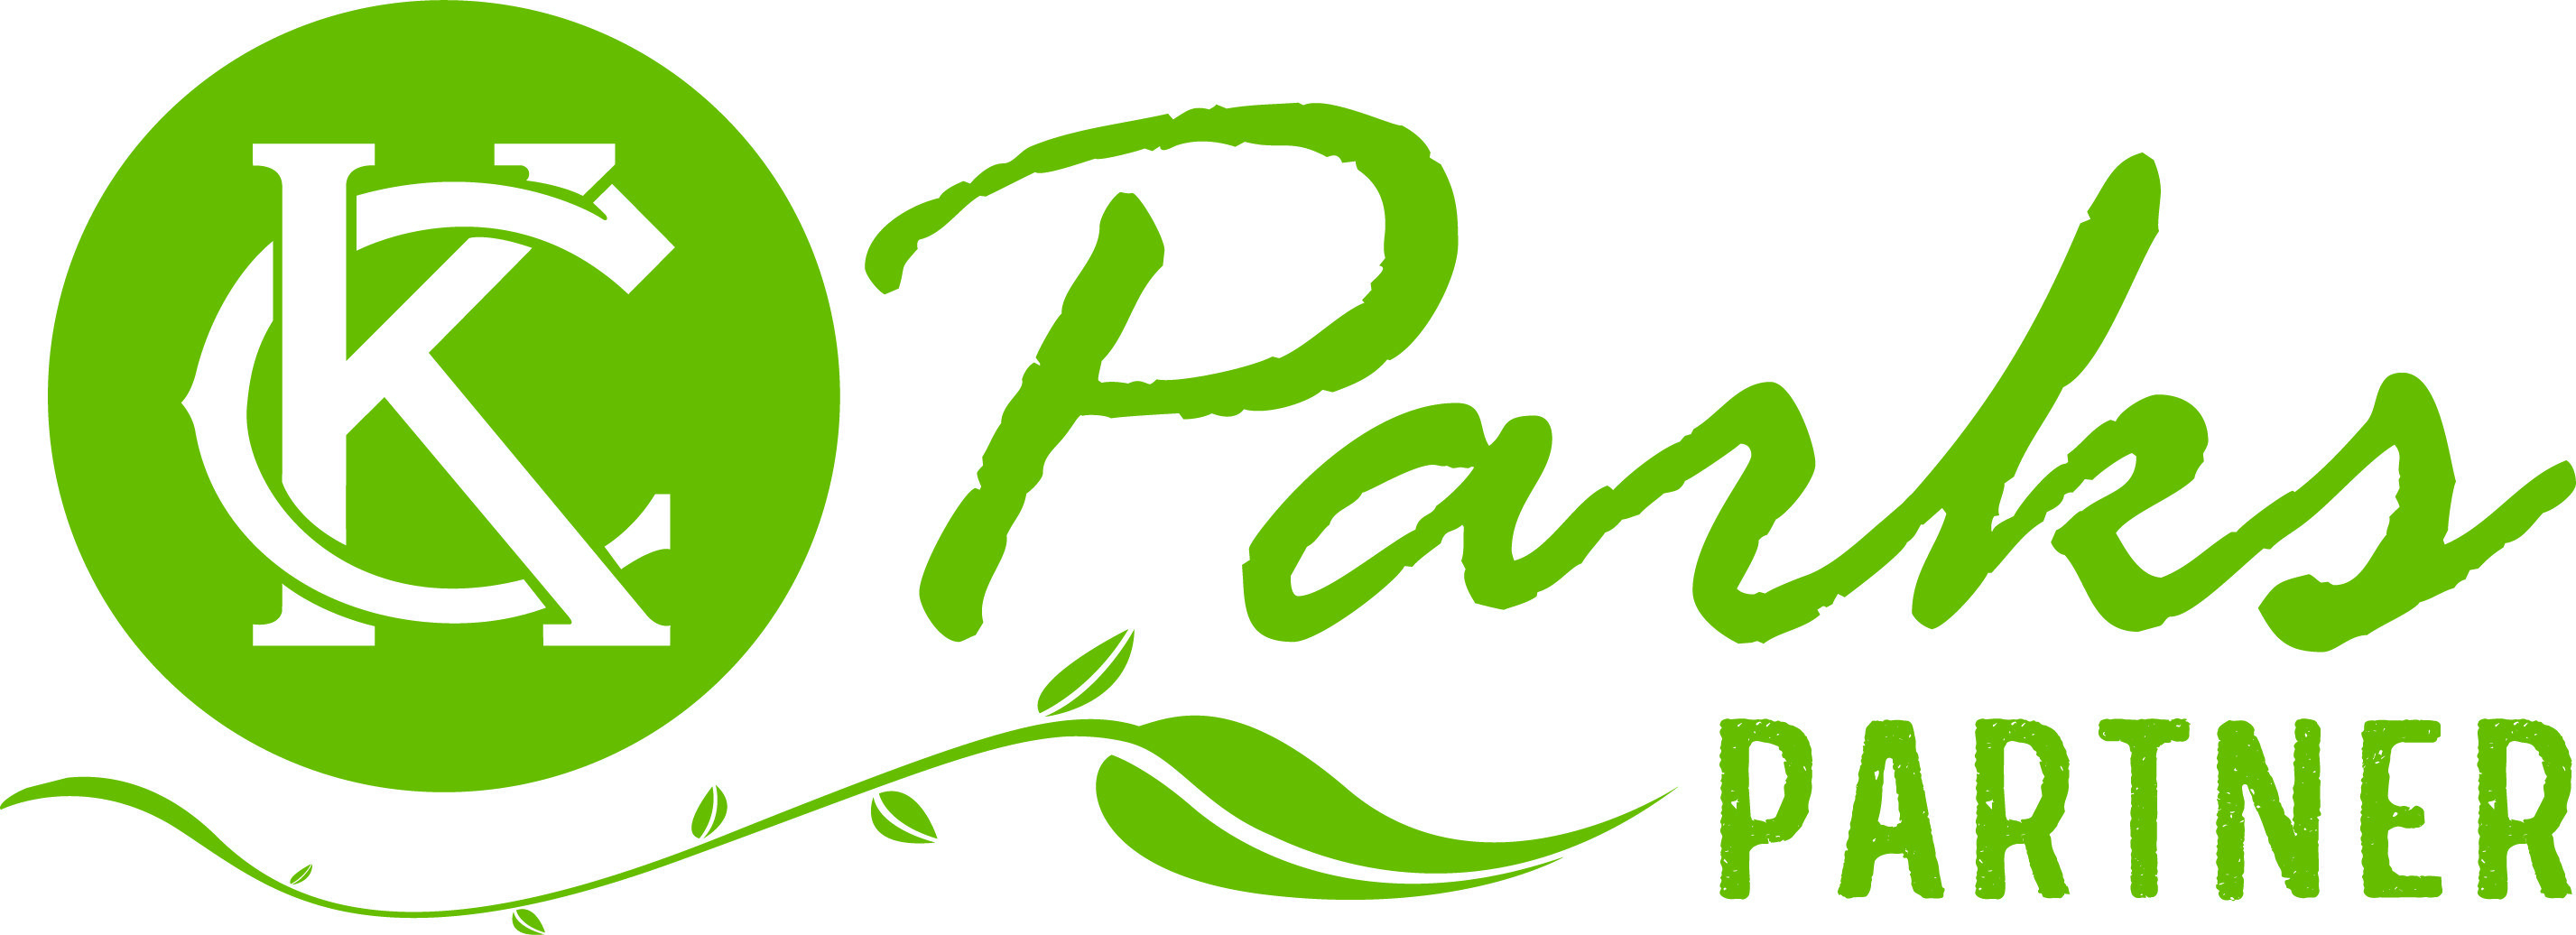 Parks Logo - KC Parks Partner Logo - KC Parks and Rec